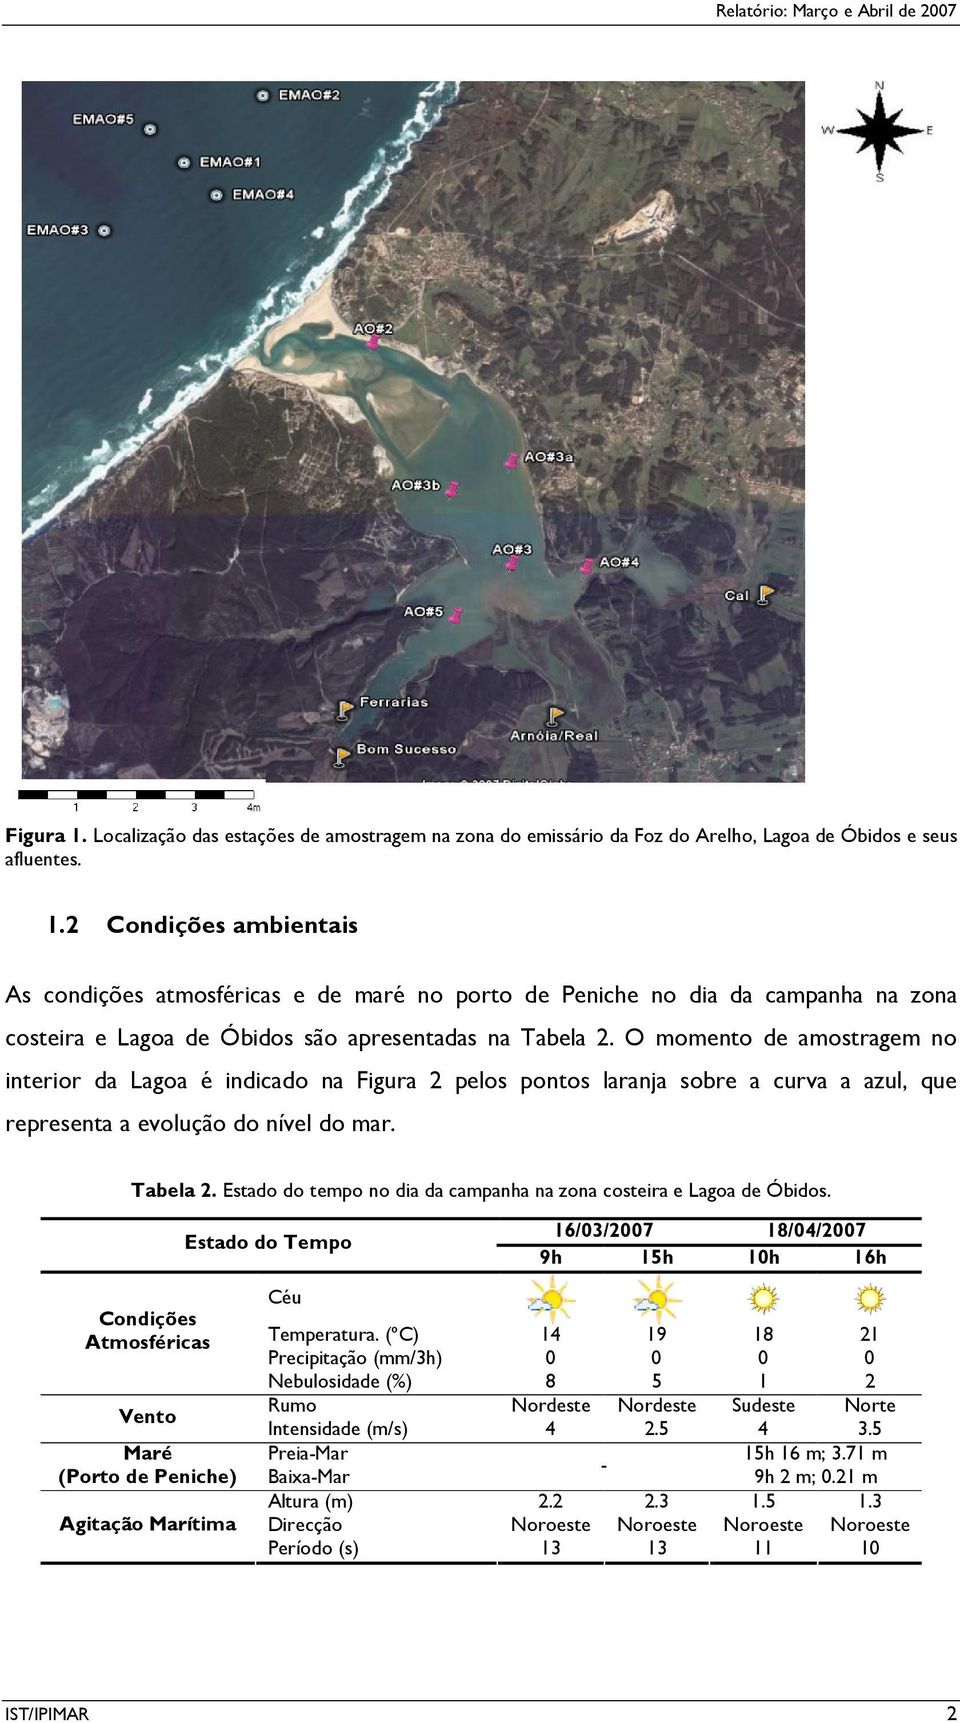 Estado do tempo no dia da campanha na zona costeira e Lagoa de Óbidos.